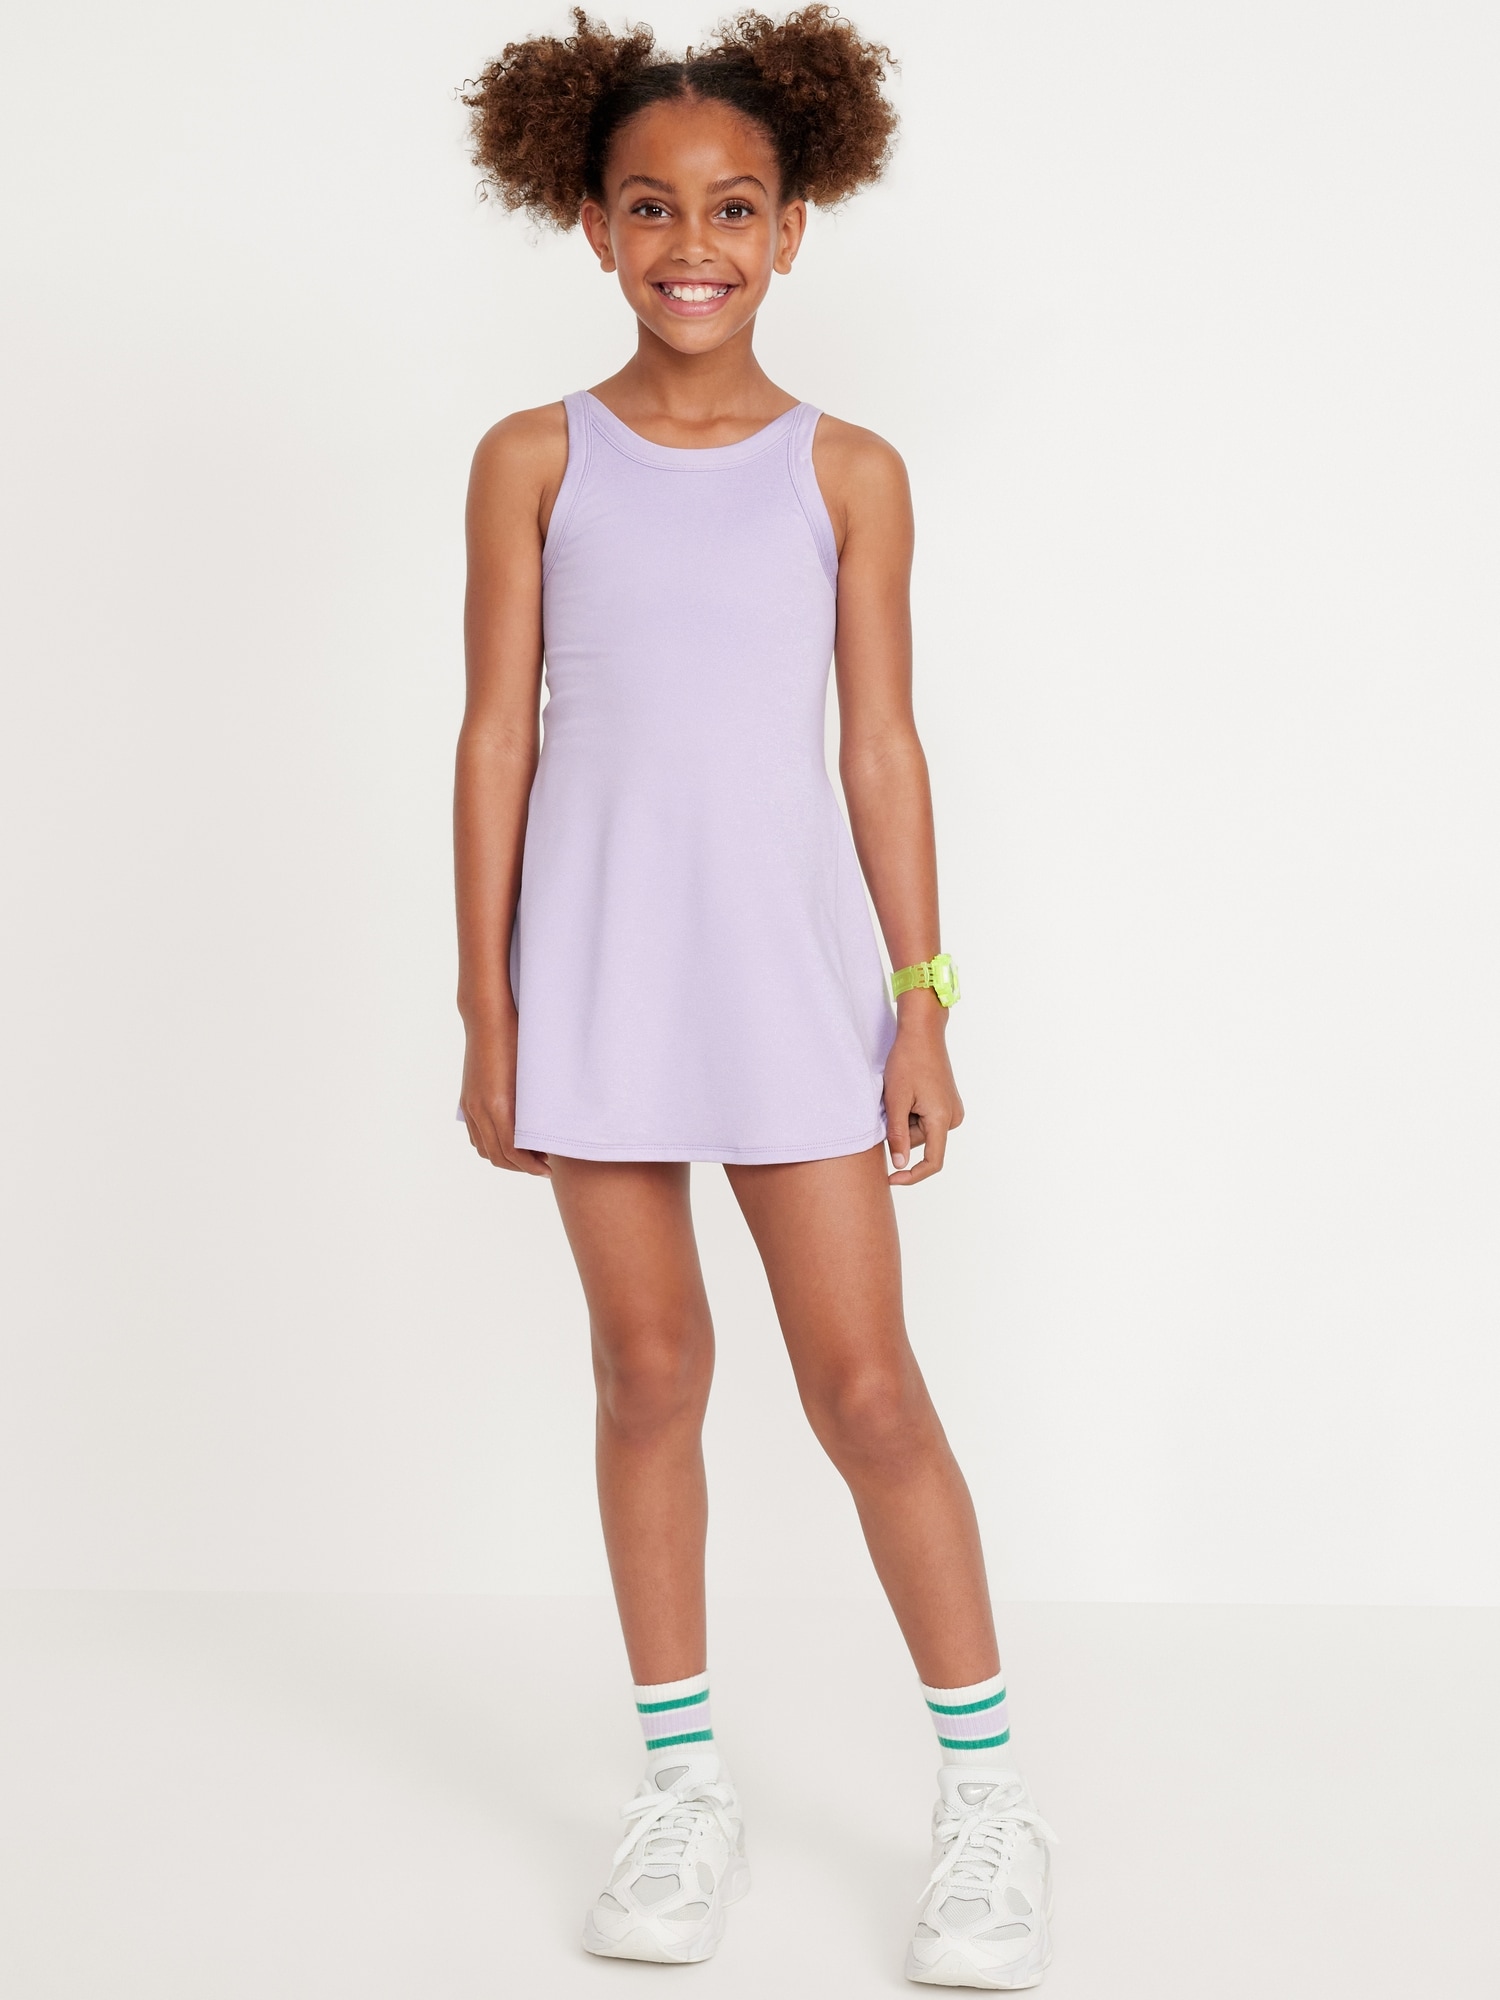 올드네이비 PowerPress Sleeveless Athletic Dress for Girls